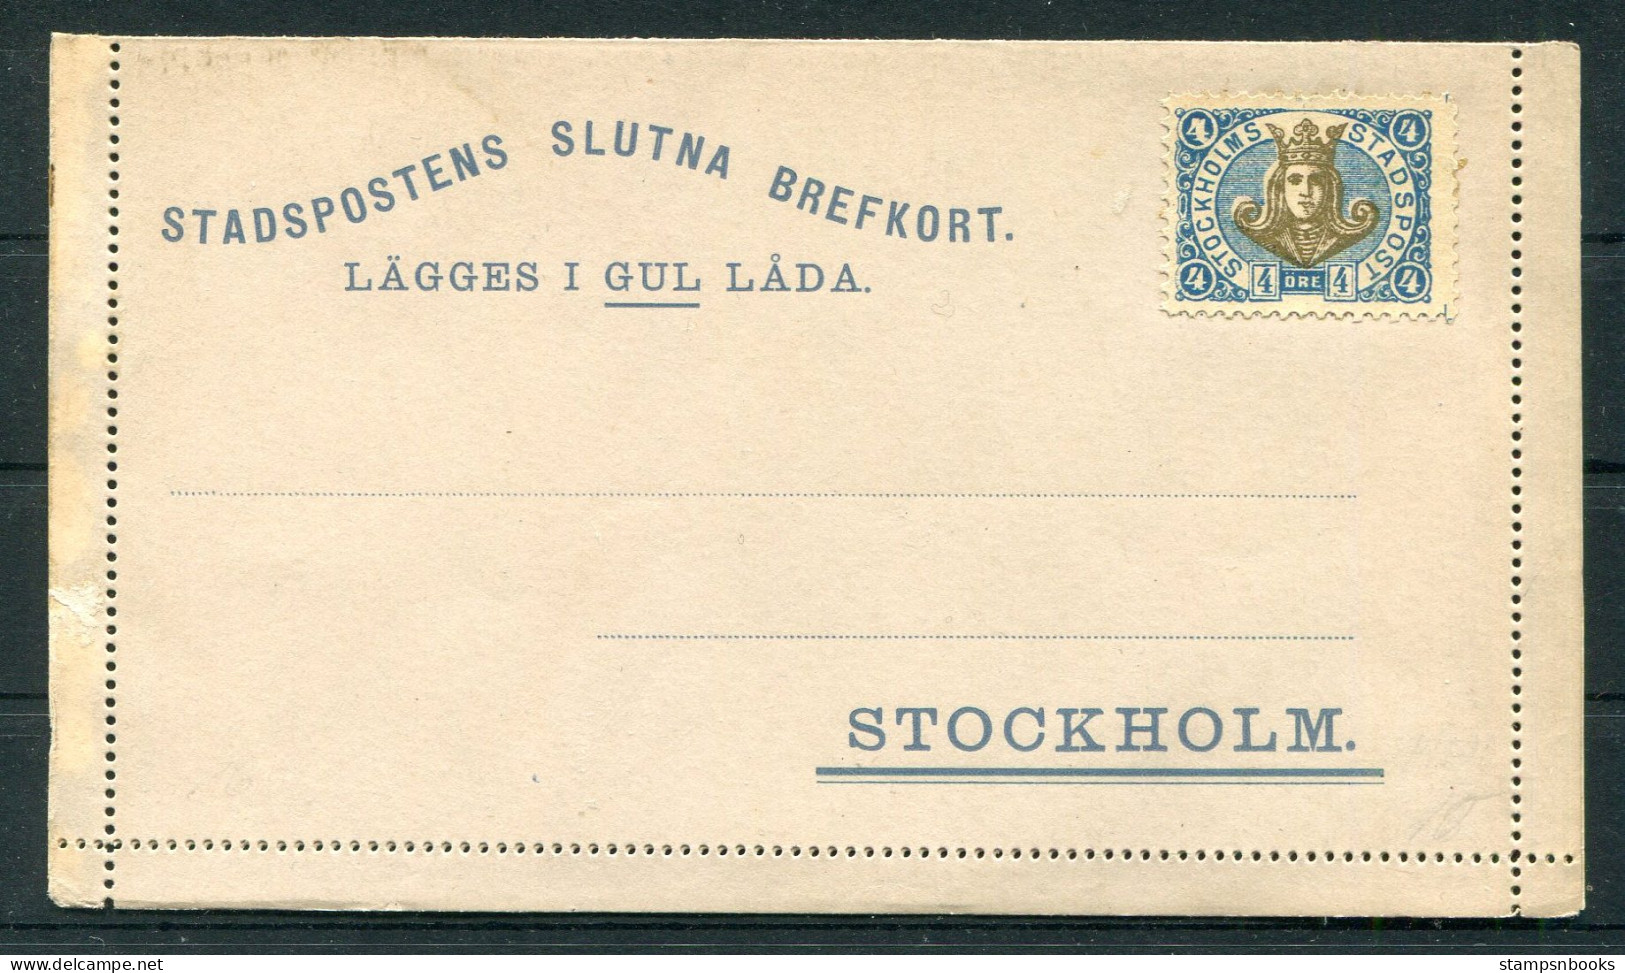 Sweden Stadspostens Slutna Brefkort, Stcokholm Loval Post Lettercard Stationery - Emisiones Locales